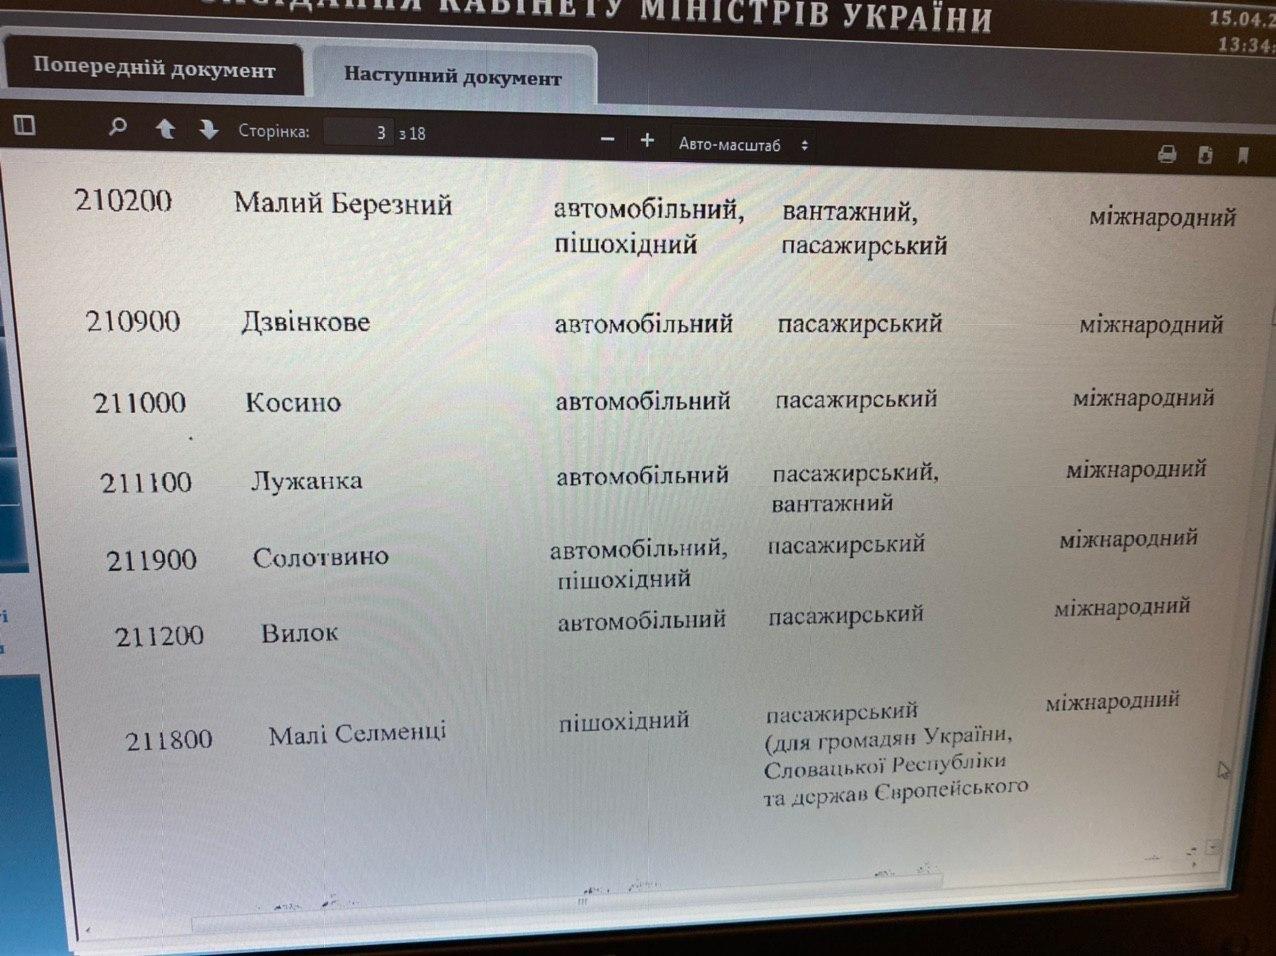 Уряд закриває ще 10 КПП на кордоні. Документ: Олексій Гончаренко у Telegram